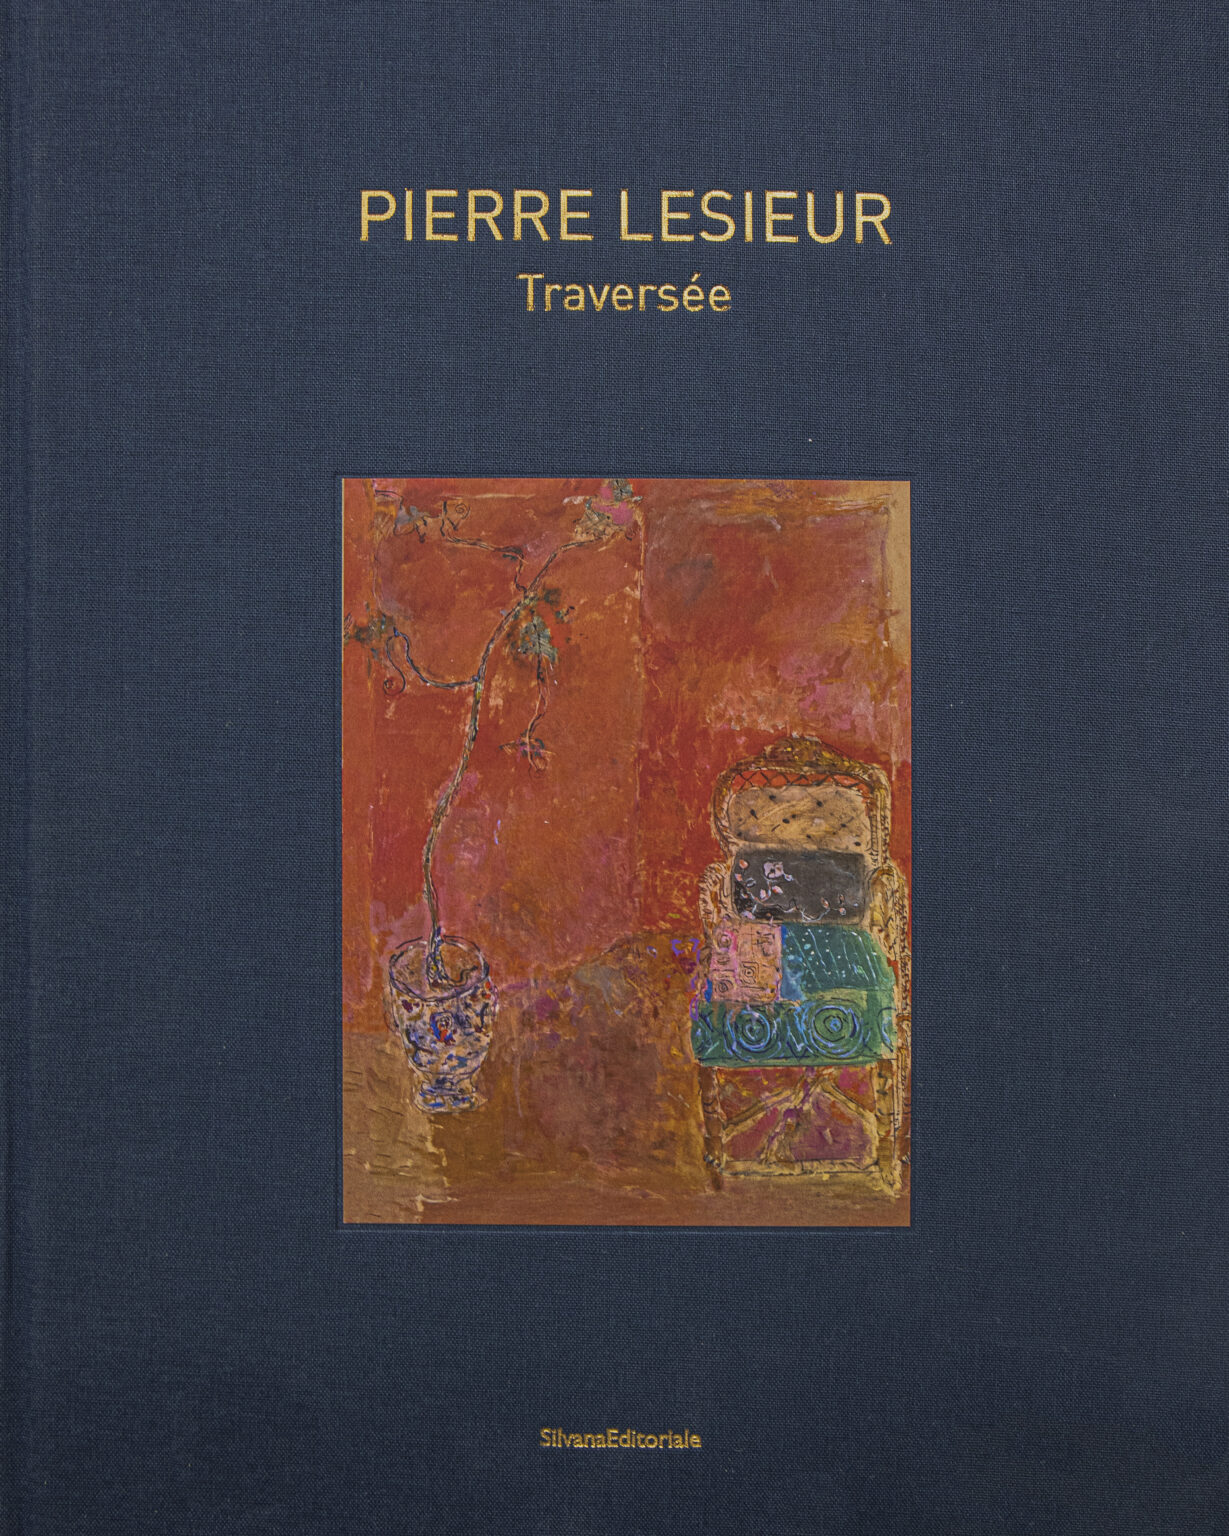 P. Lesieur画集「Traversée」